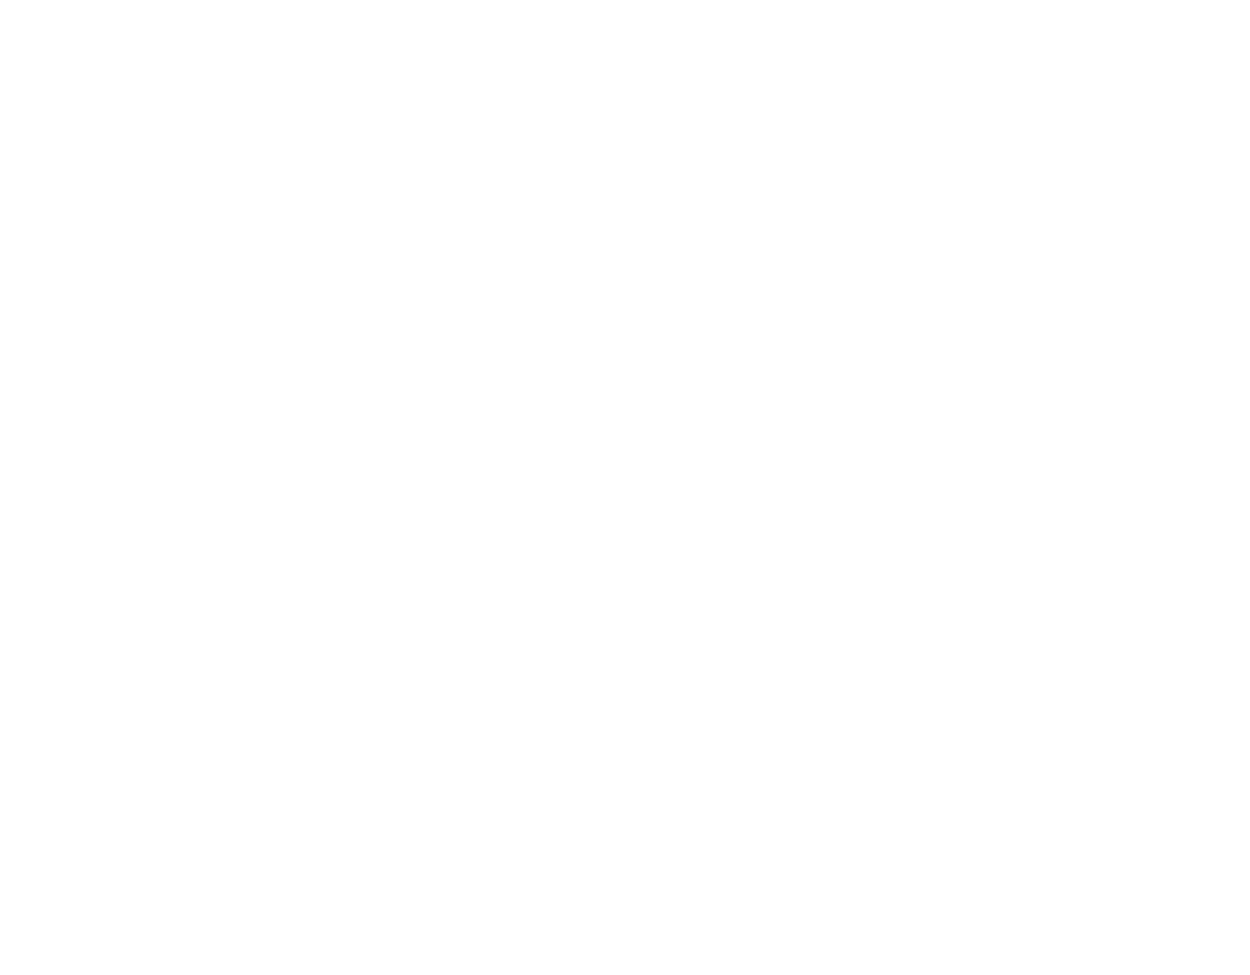 air-force